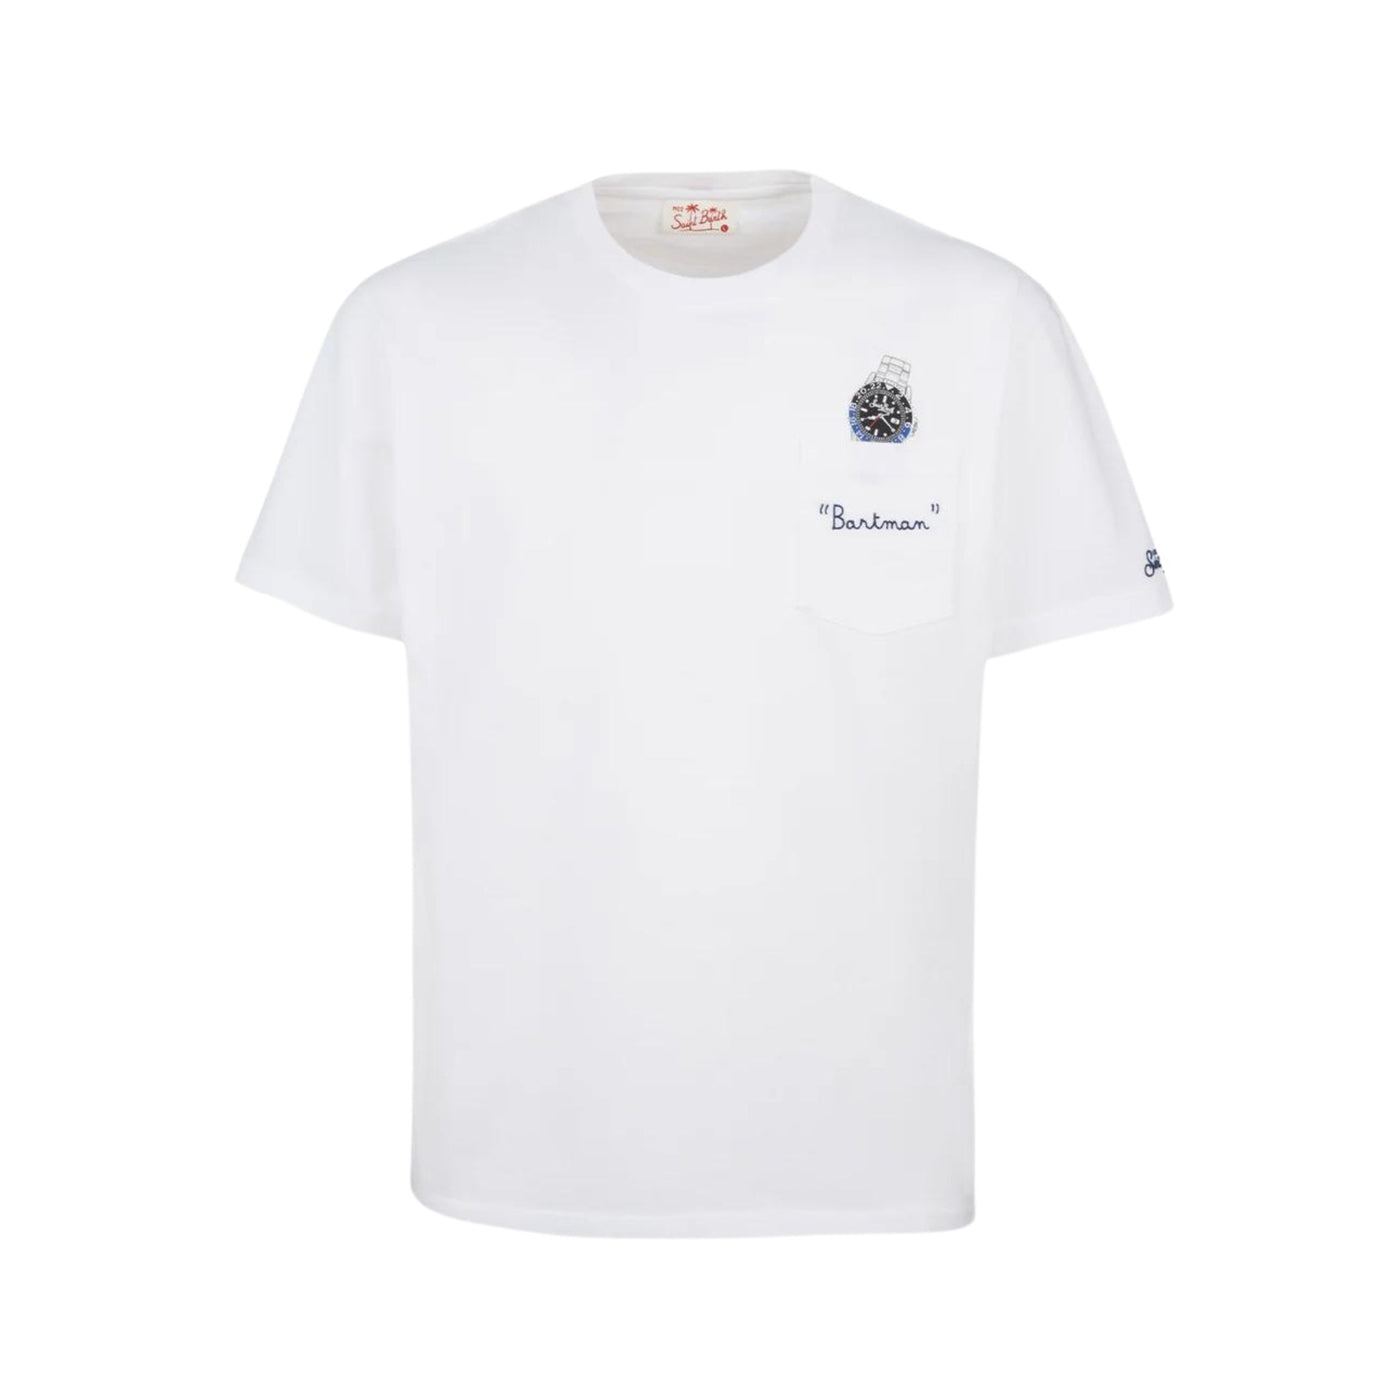 T-shirt con taschino e stampa orologio e scritta "batman" ricamata sul petto